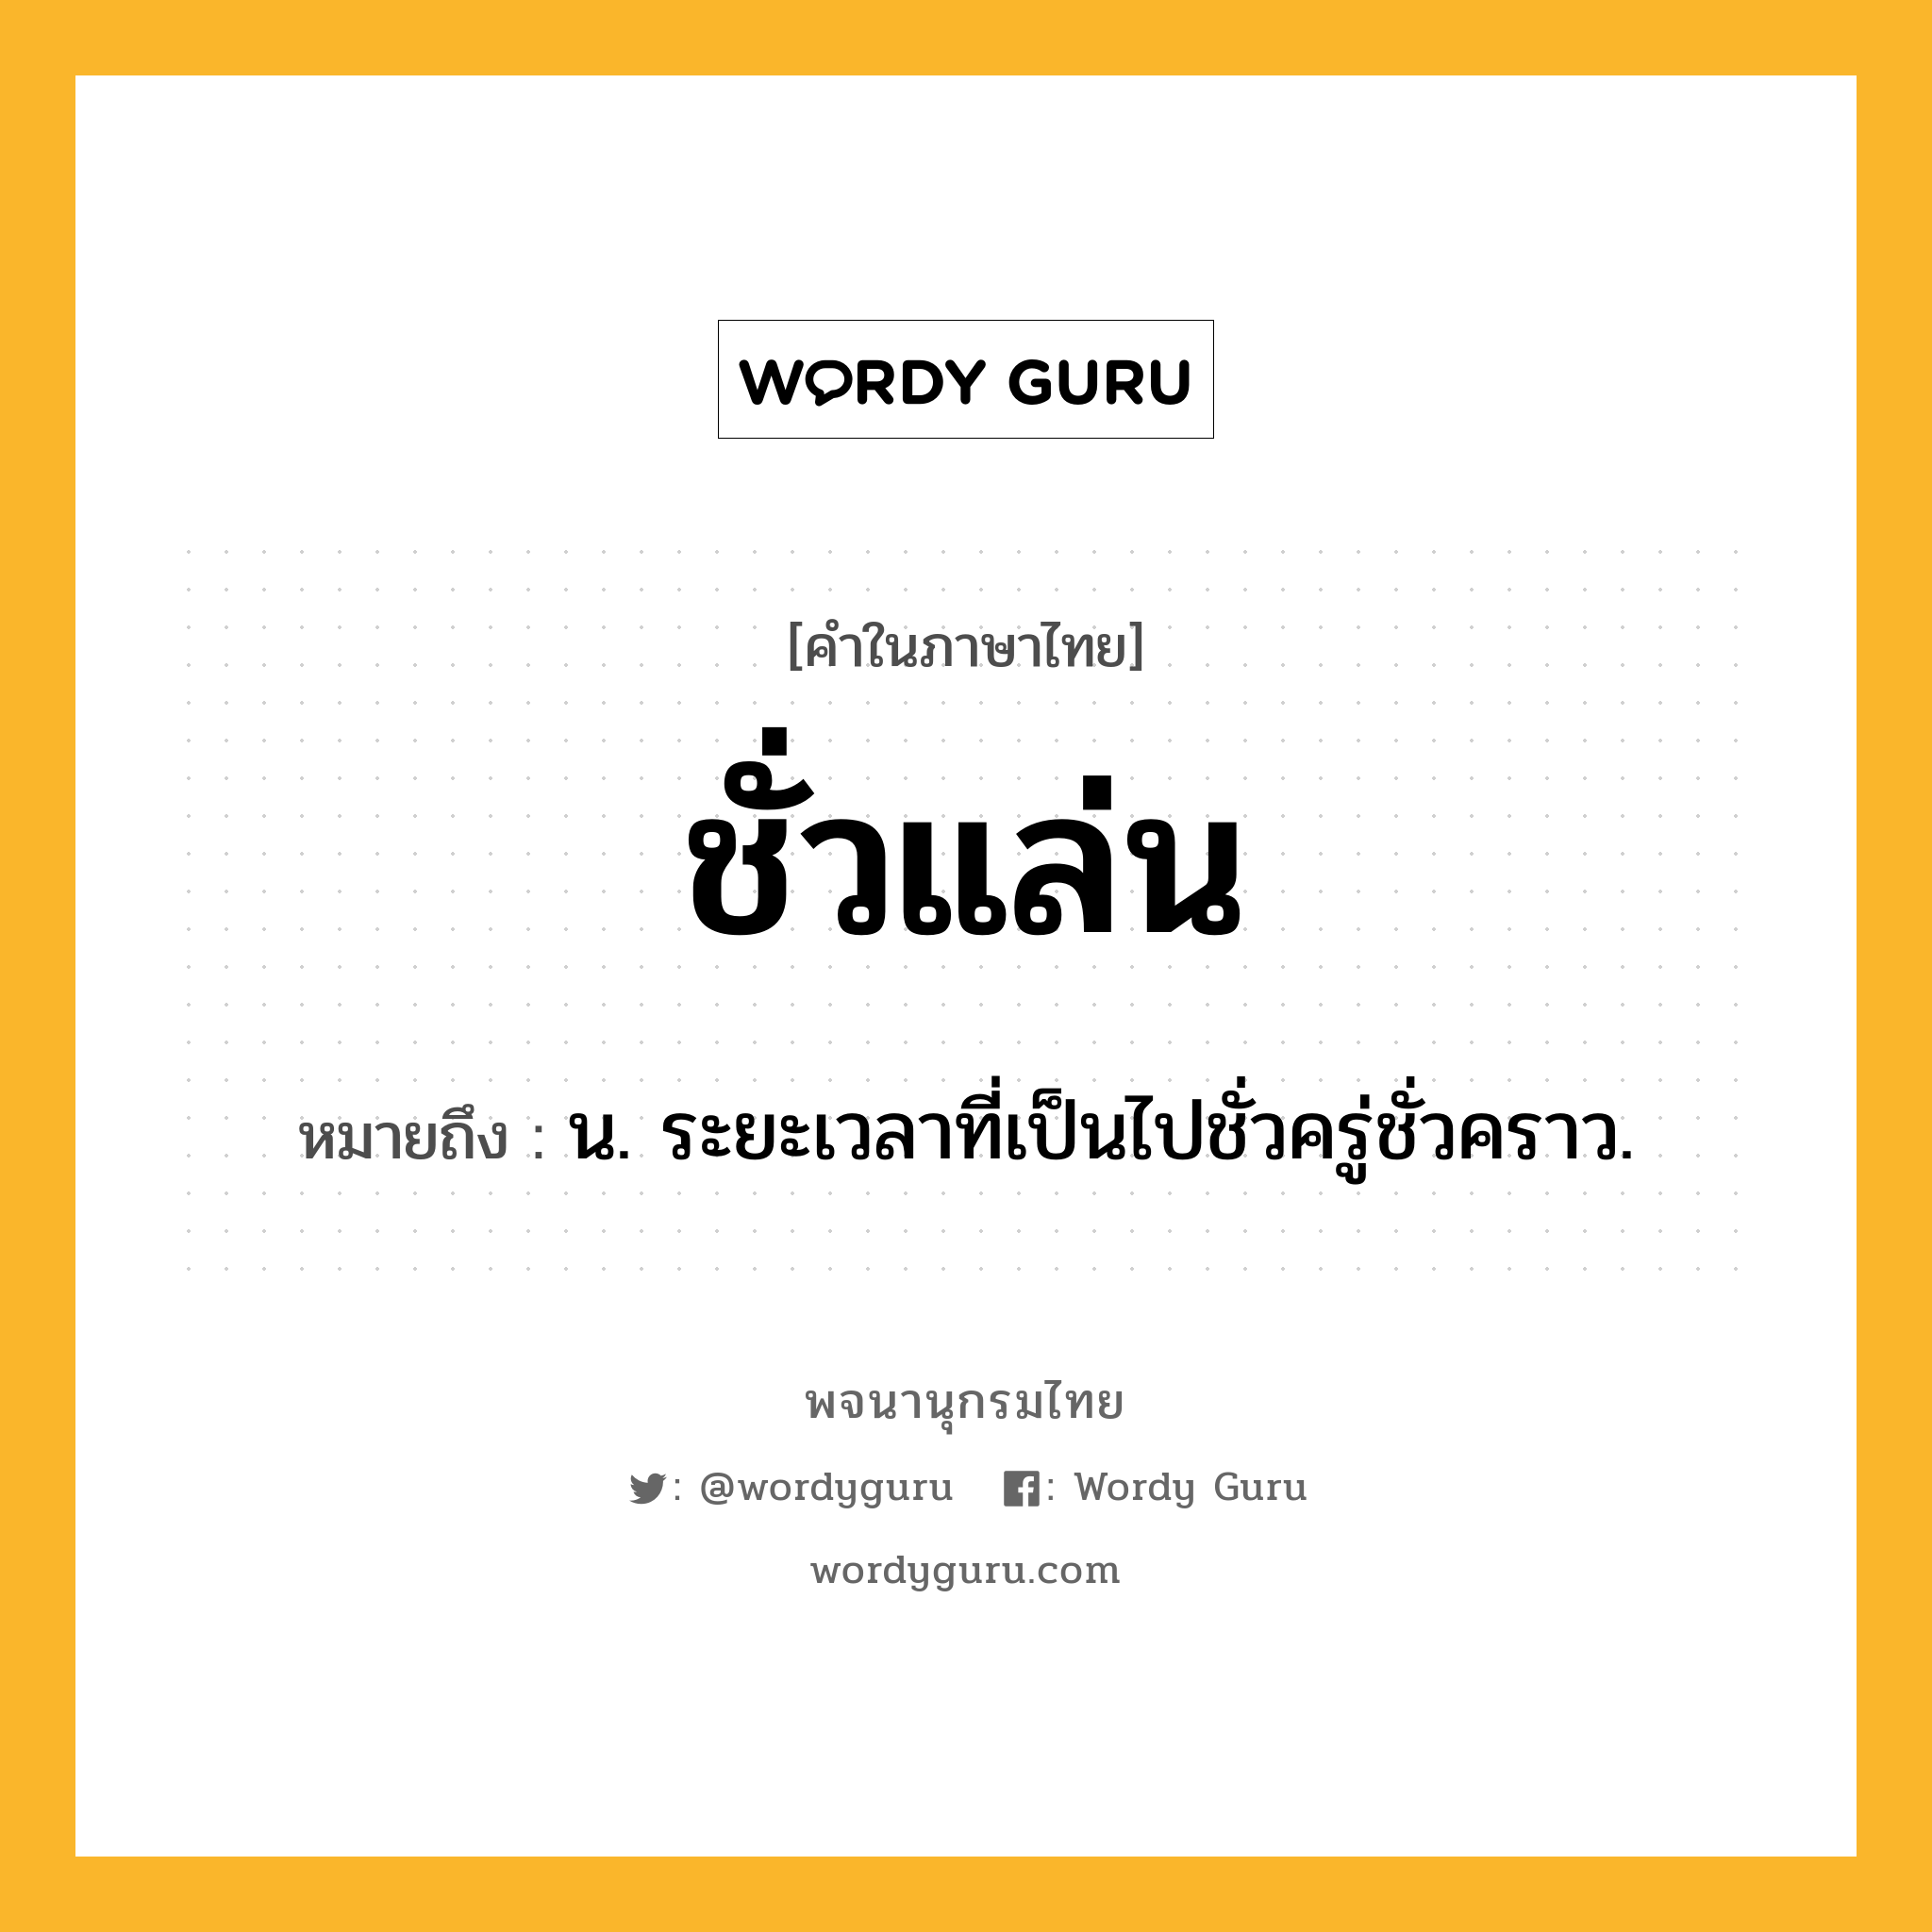 ชั่วแล่น หมายถึงอะไร?, คำในภาษาไทย ชั่วแล่น หมายถึง น. ระยะเวลาที่เป็นไปชั่วครู่ชั่วคราว.